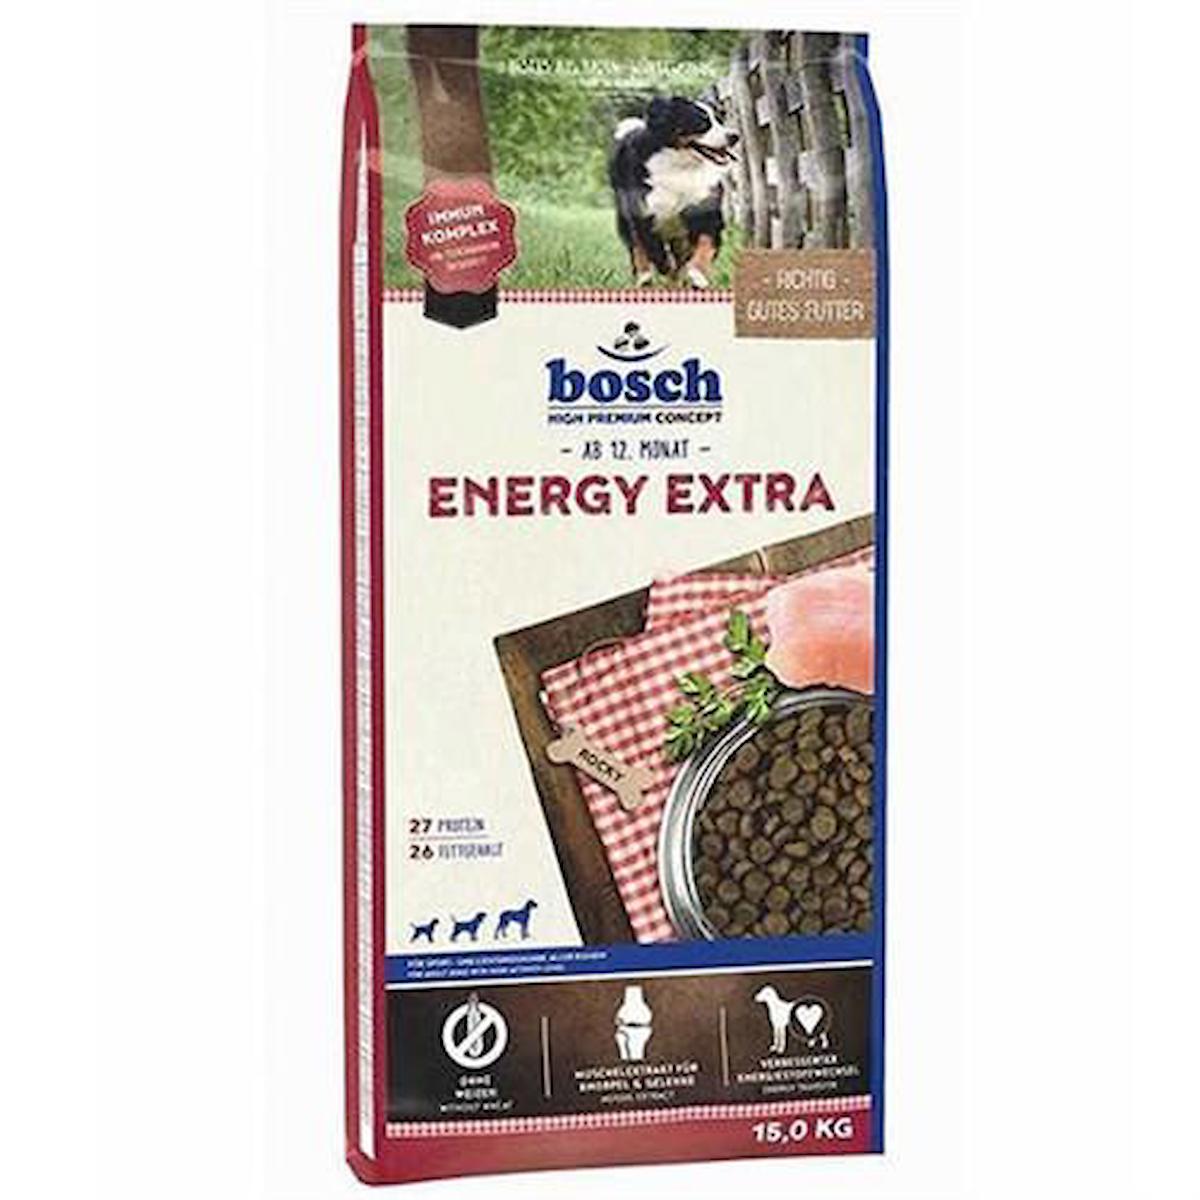 Bosch Energy Extra Tüm Irklar Yetişkin Kuru Köpek Maması 15 kg